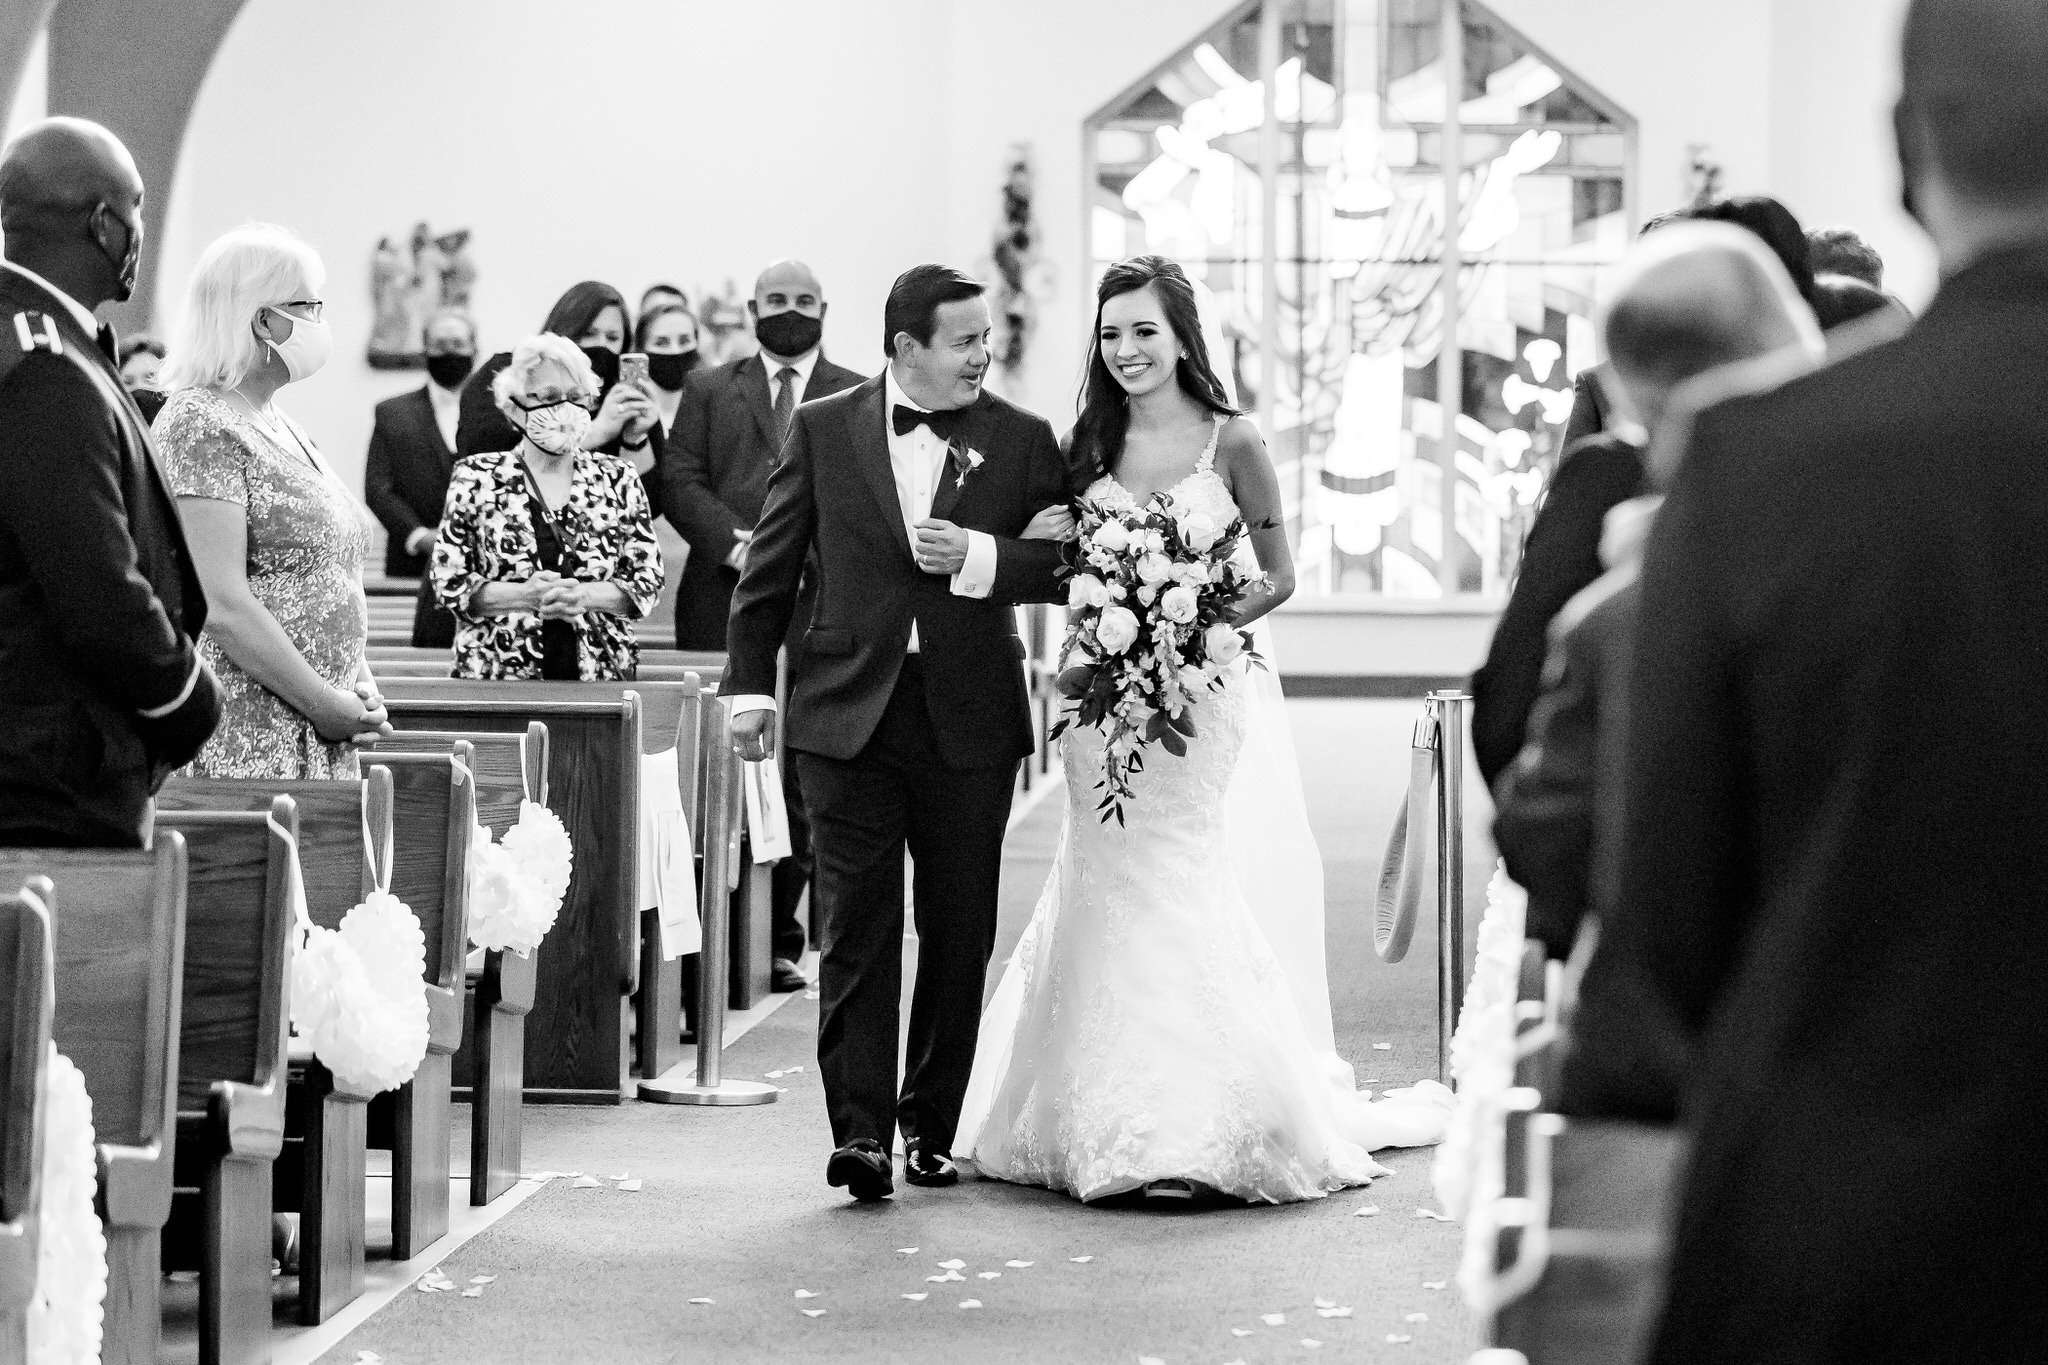 A Navy & Lavender Wedding at San Fernando Hall in San Antonio, TX by Dawn Elizabeth Studios, San Antonio Wedding Photographer